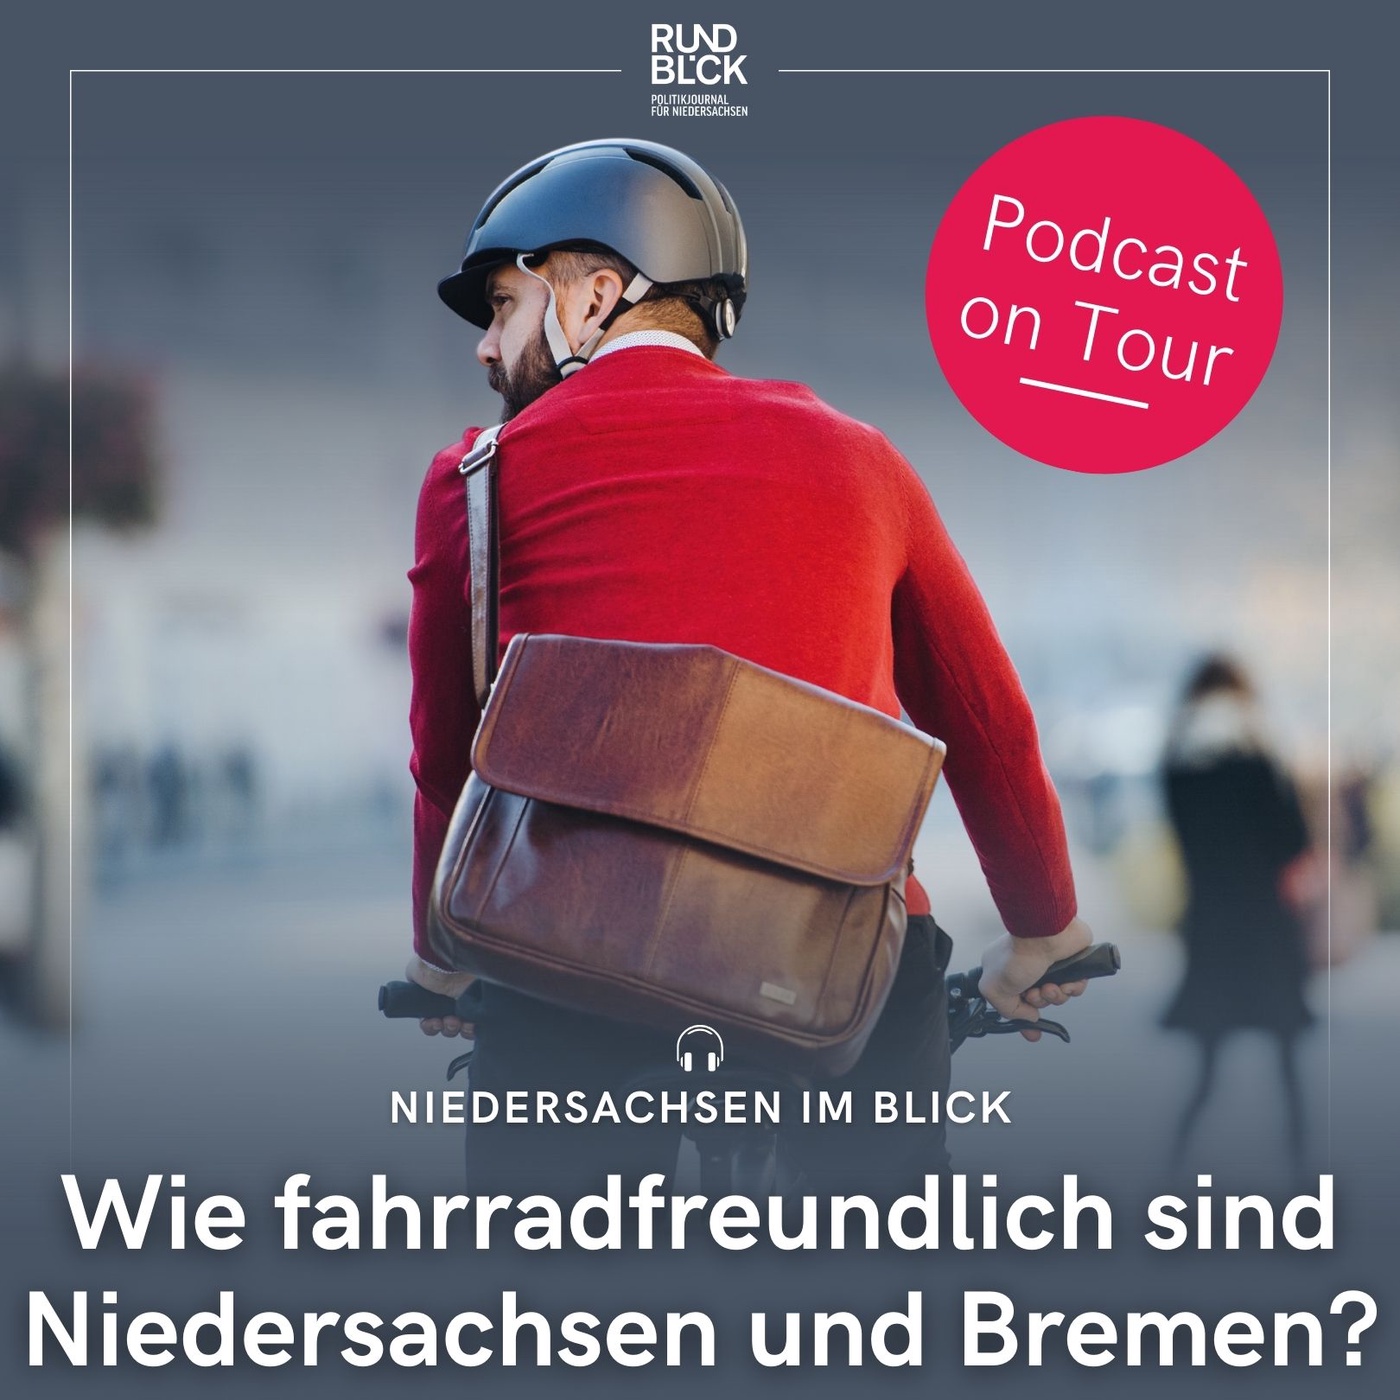 Wie fahrradfreundlich sind Niedersachsen und Bremen?